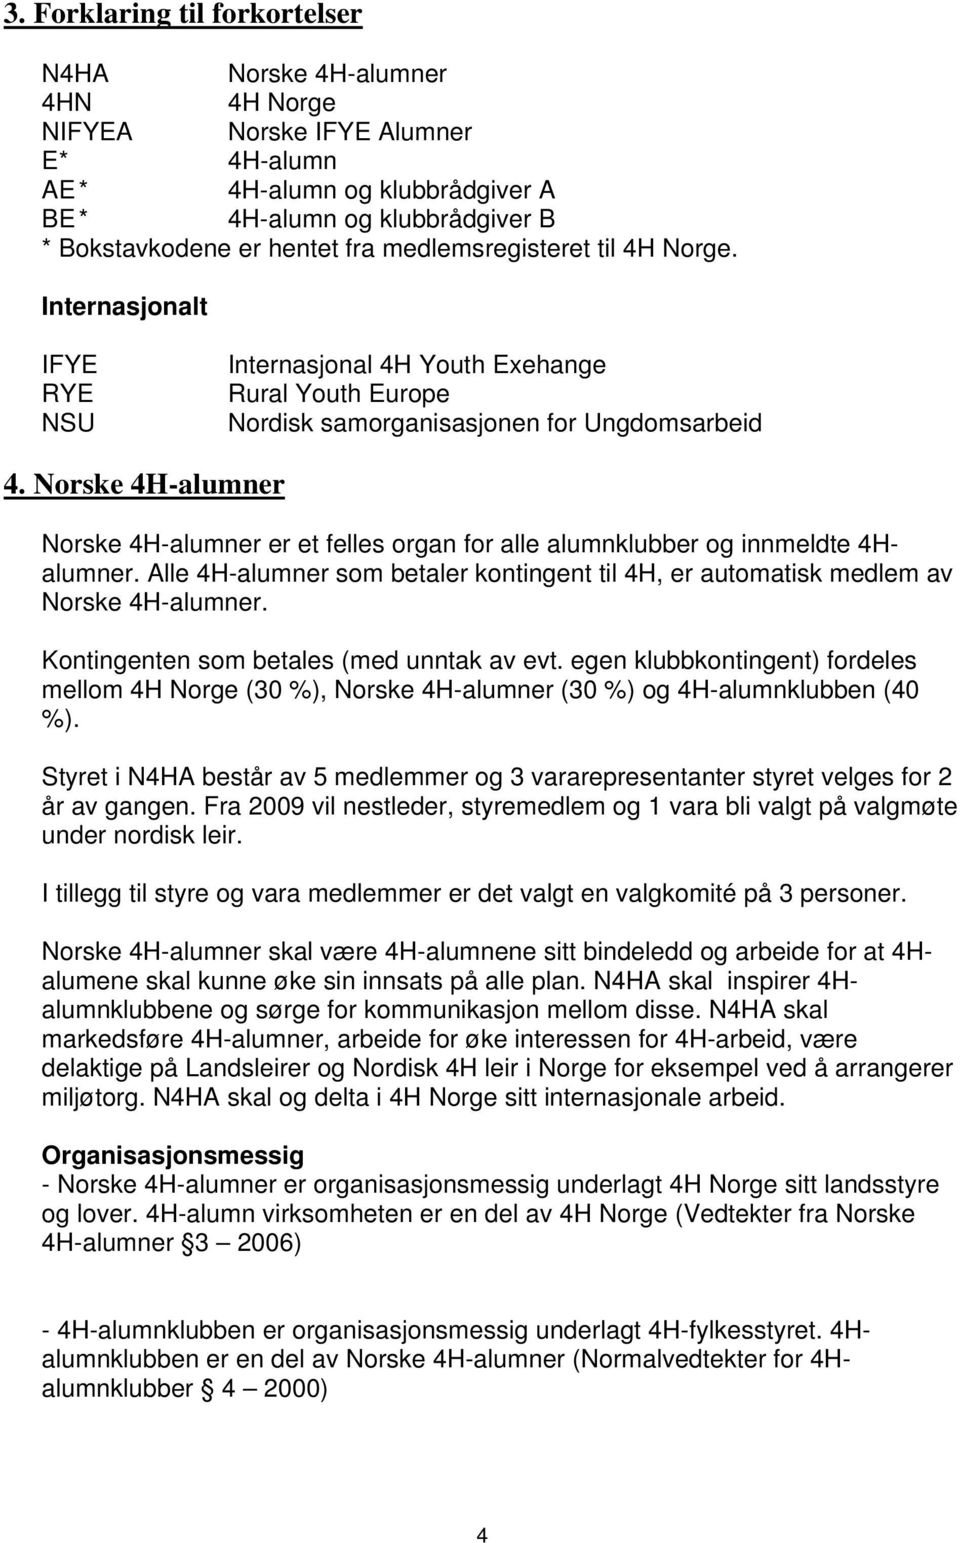 Norske 4H-alumner Norske 4H-alumner er et felles organ for alle alumnklubber og innmeldte 4Halumner. Alle 4H-alumner som betaler kontingent til 4H, er automatisk medlem av Norske 4H-alumner.